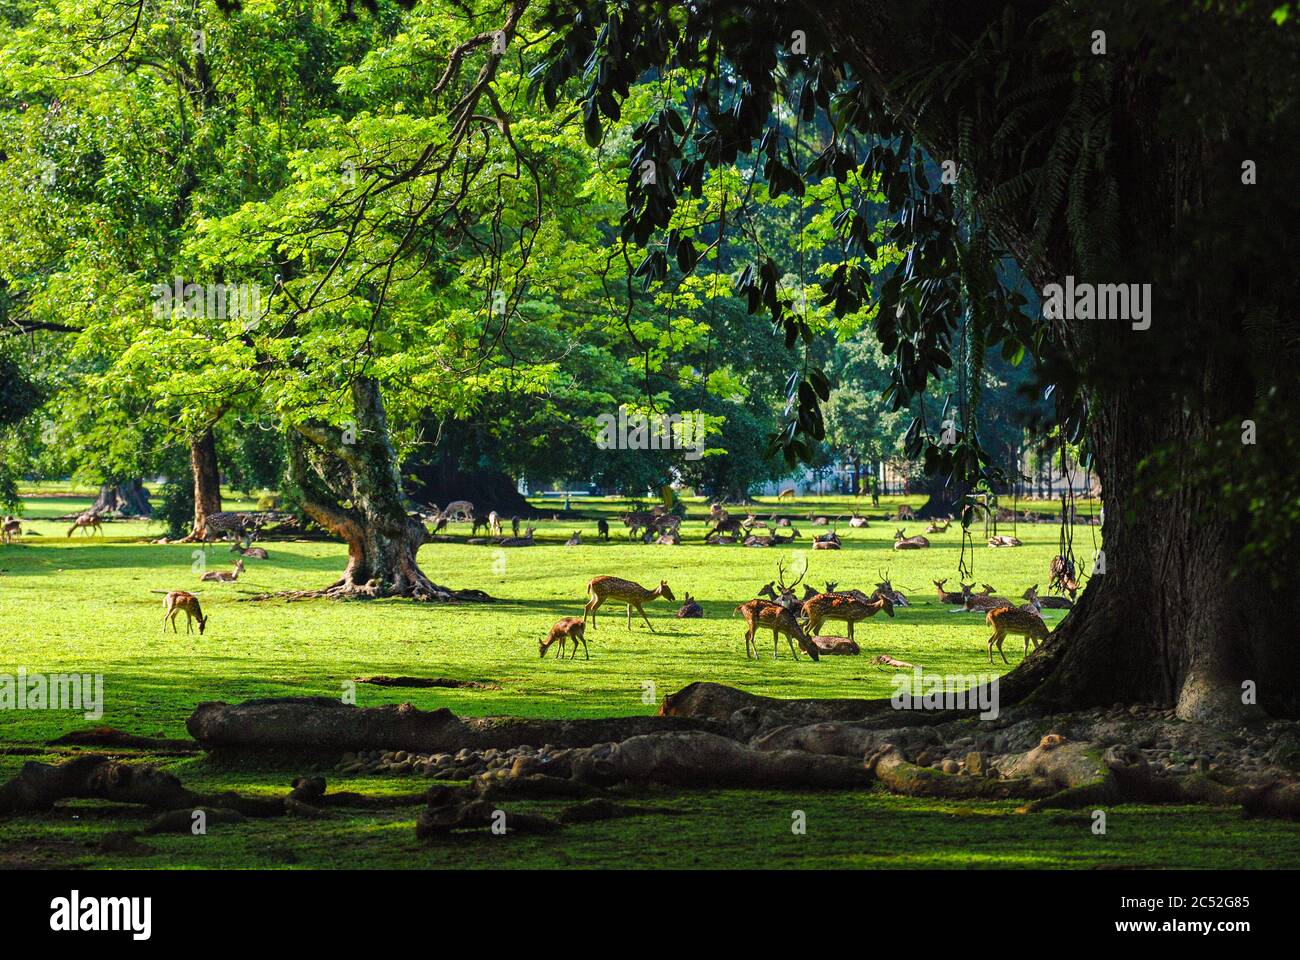 Deer in Bogor Botanical Gardens, Bogor, West Java, Indonesia Stock Photo